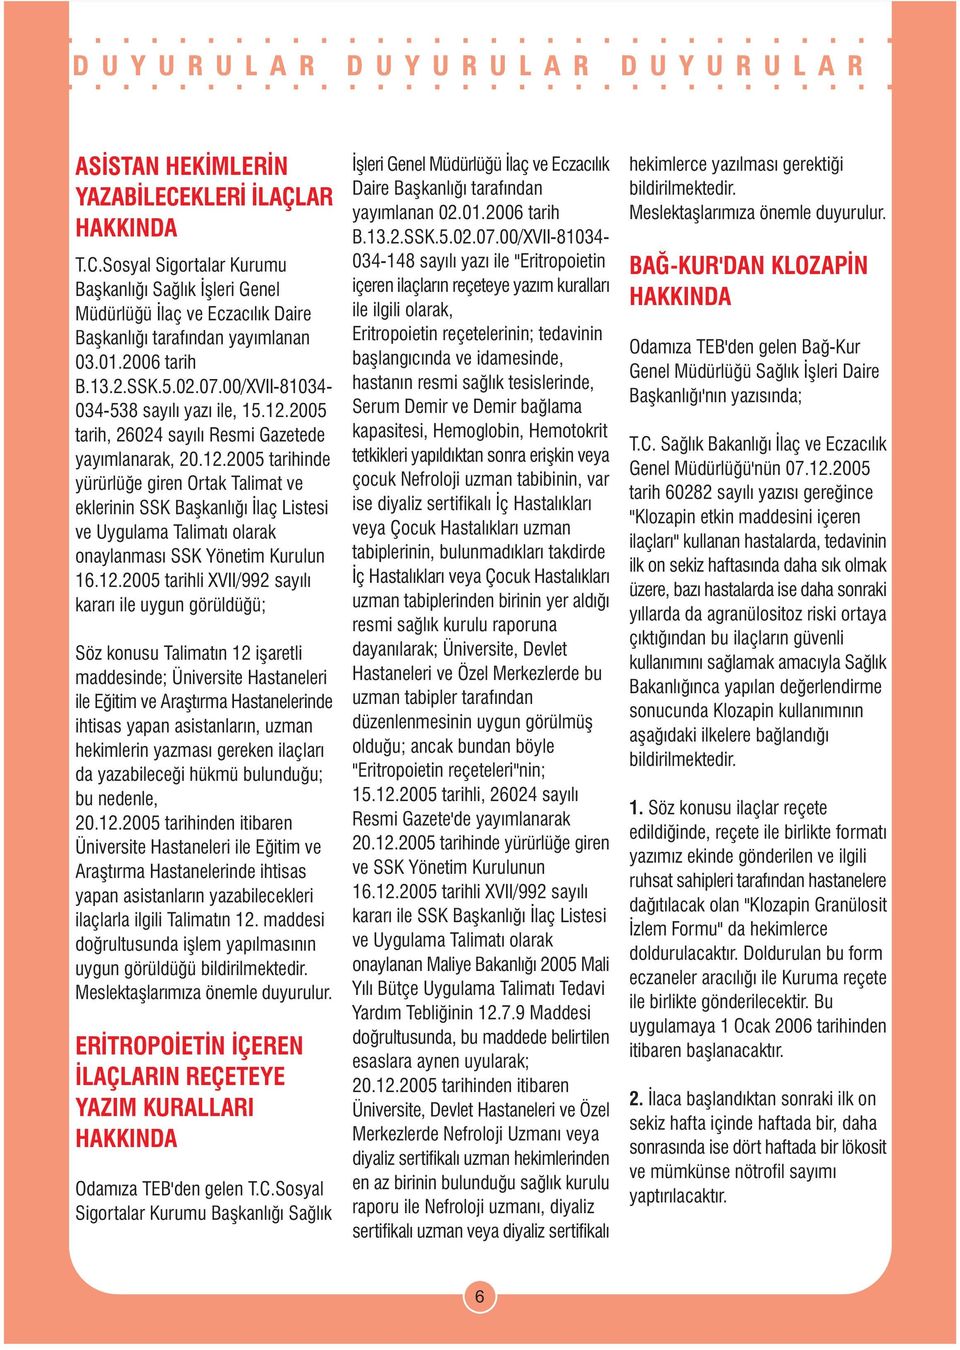 2005 tarih, 26024 sayýlý Resmi Gazetede yayýmlanarak, 20.12.